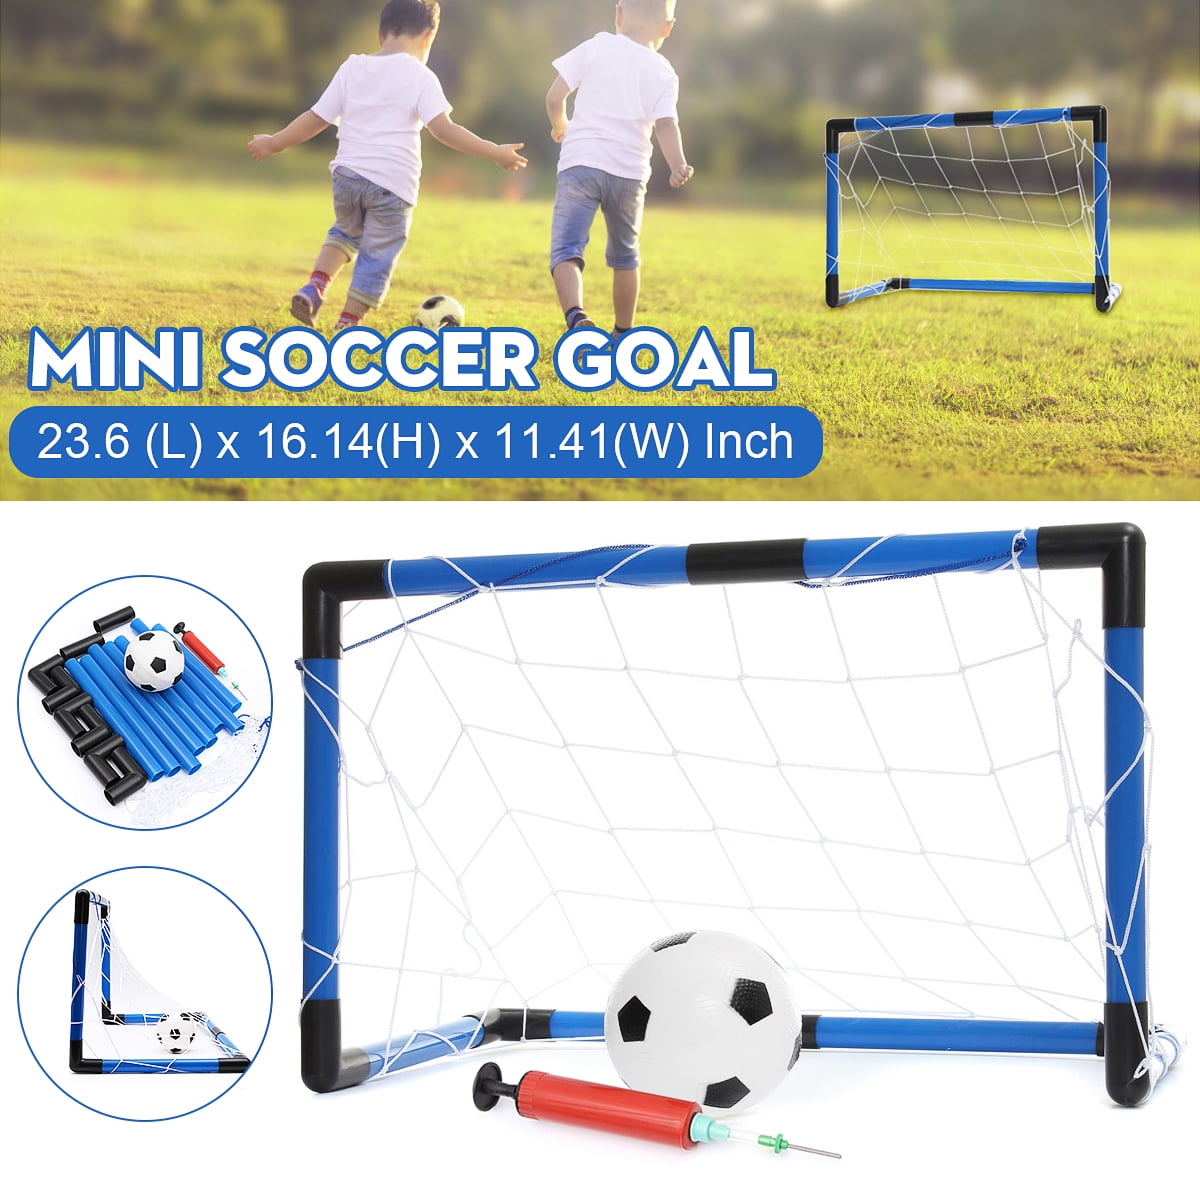 Single Yugust Mini Soccer Goal Post Net Set Portable Detachable Football Target Net for Kids Sport Training Home Game 